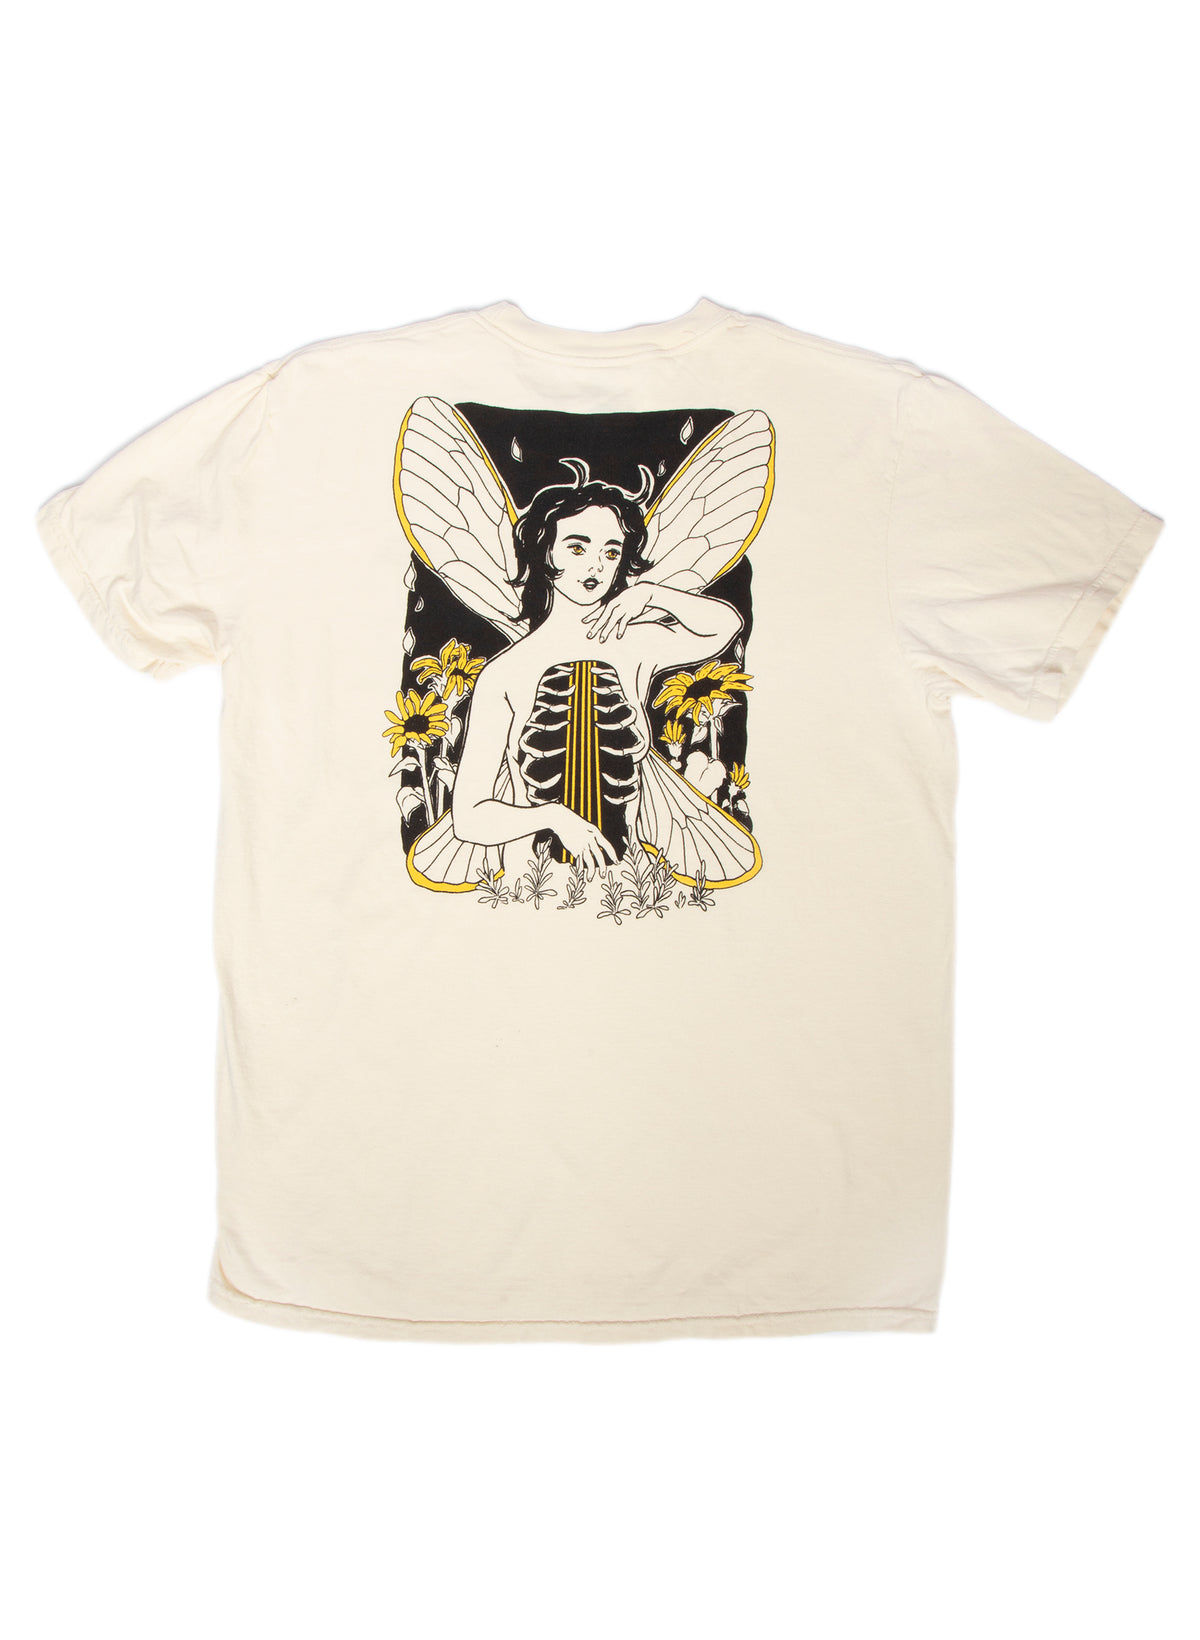 Cicada Summer Shirt by Brittany Bernstrom